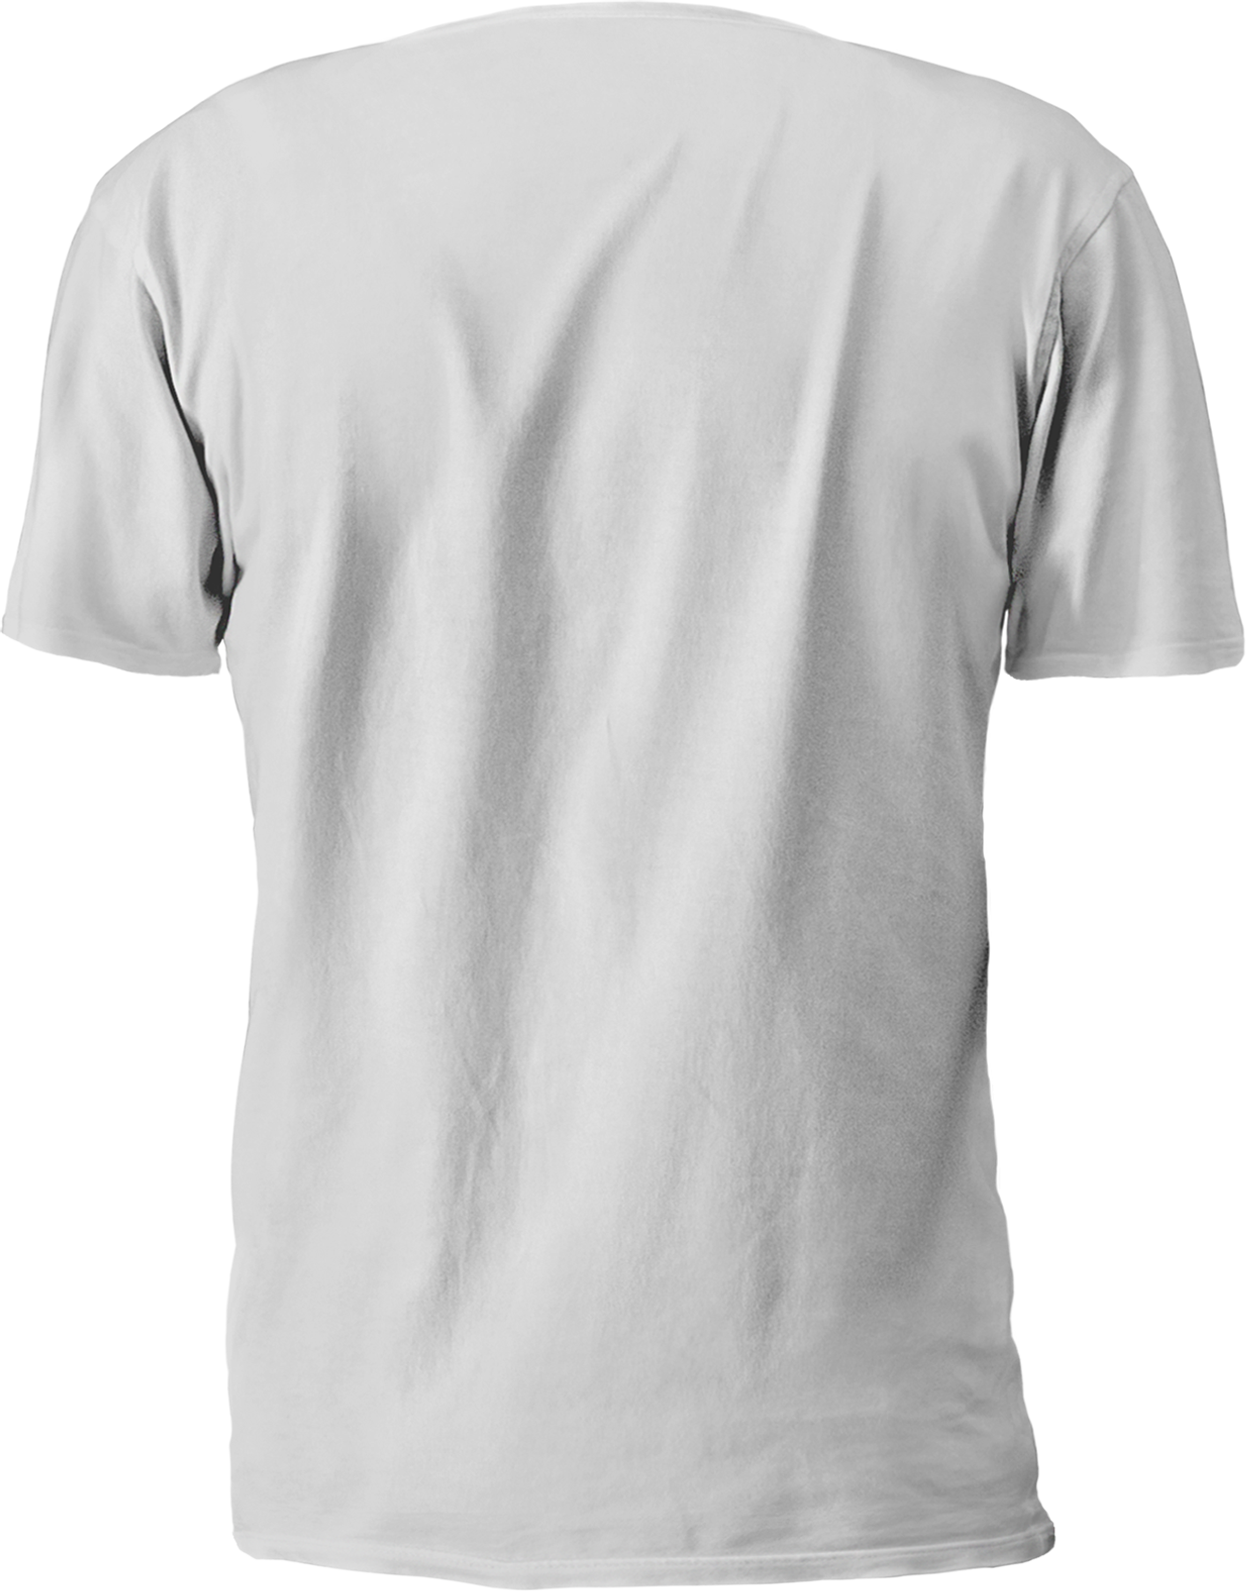 T-Shirt with Flex Print • TShirt Printing